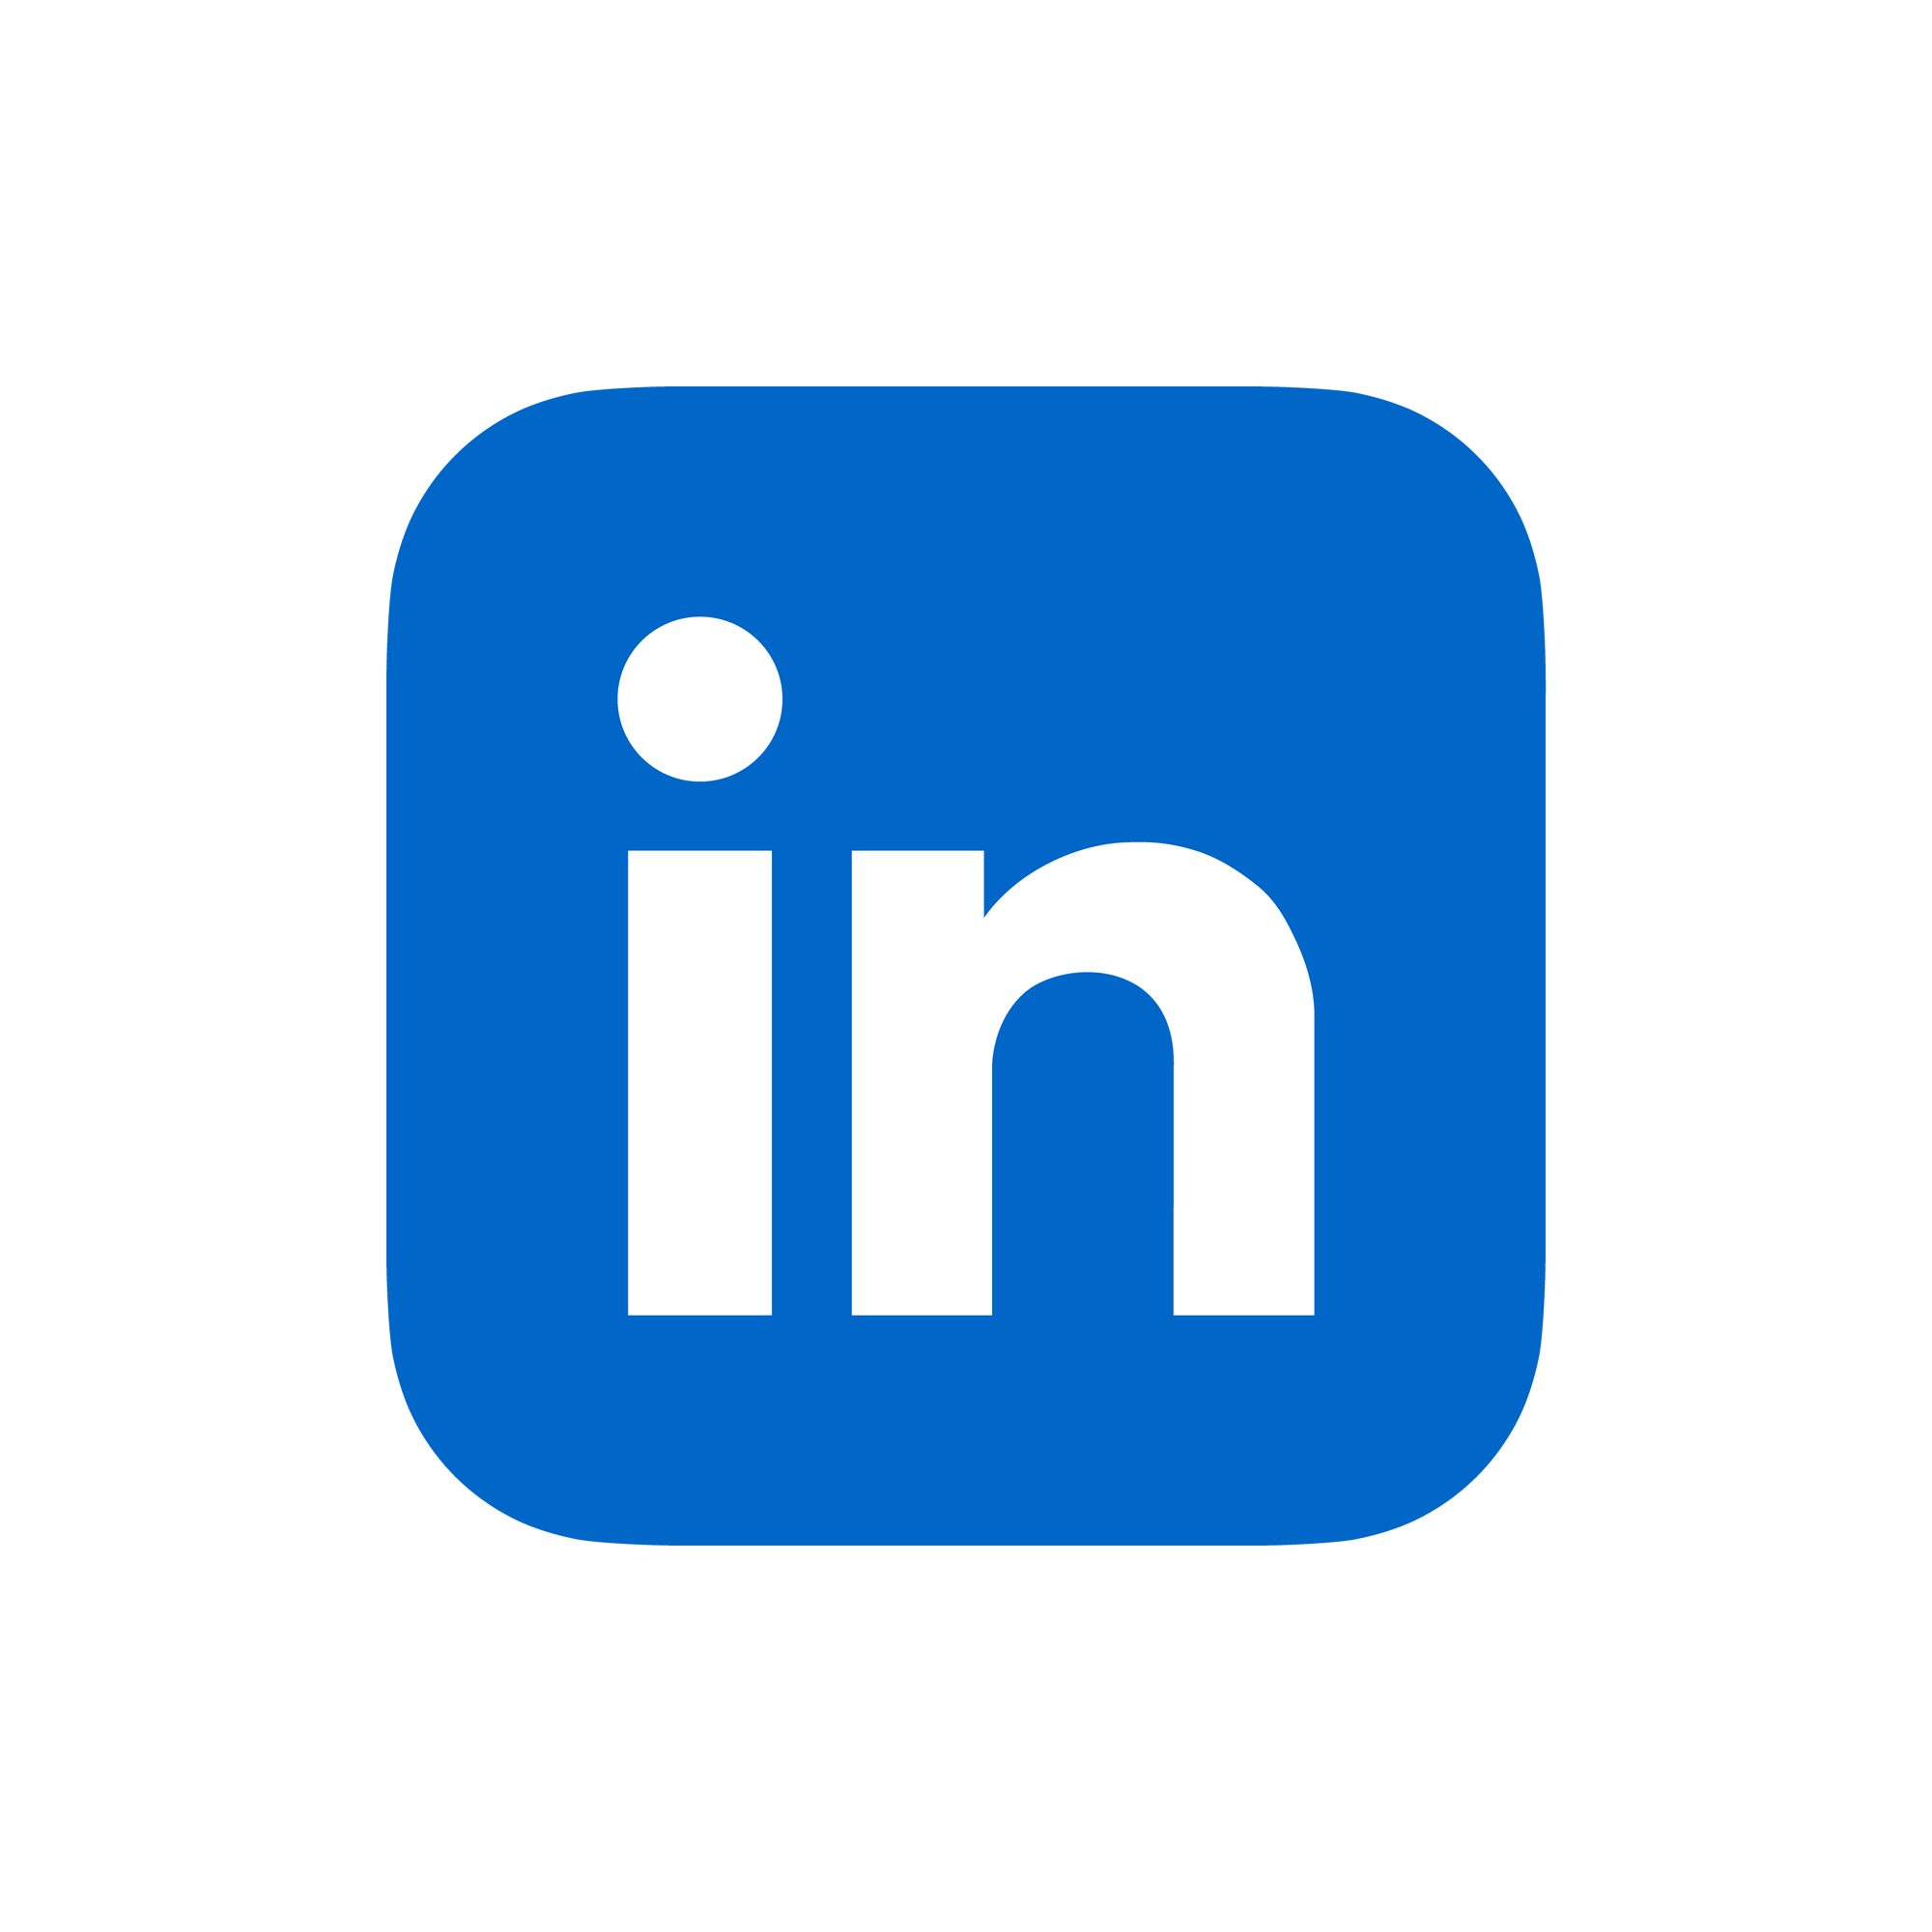 LinkedInIcon